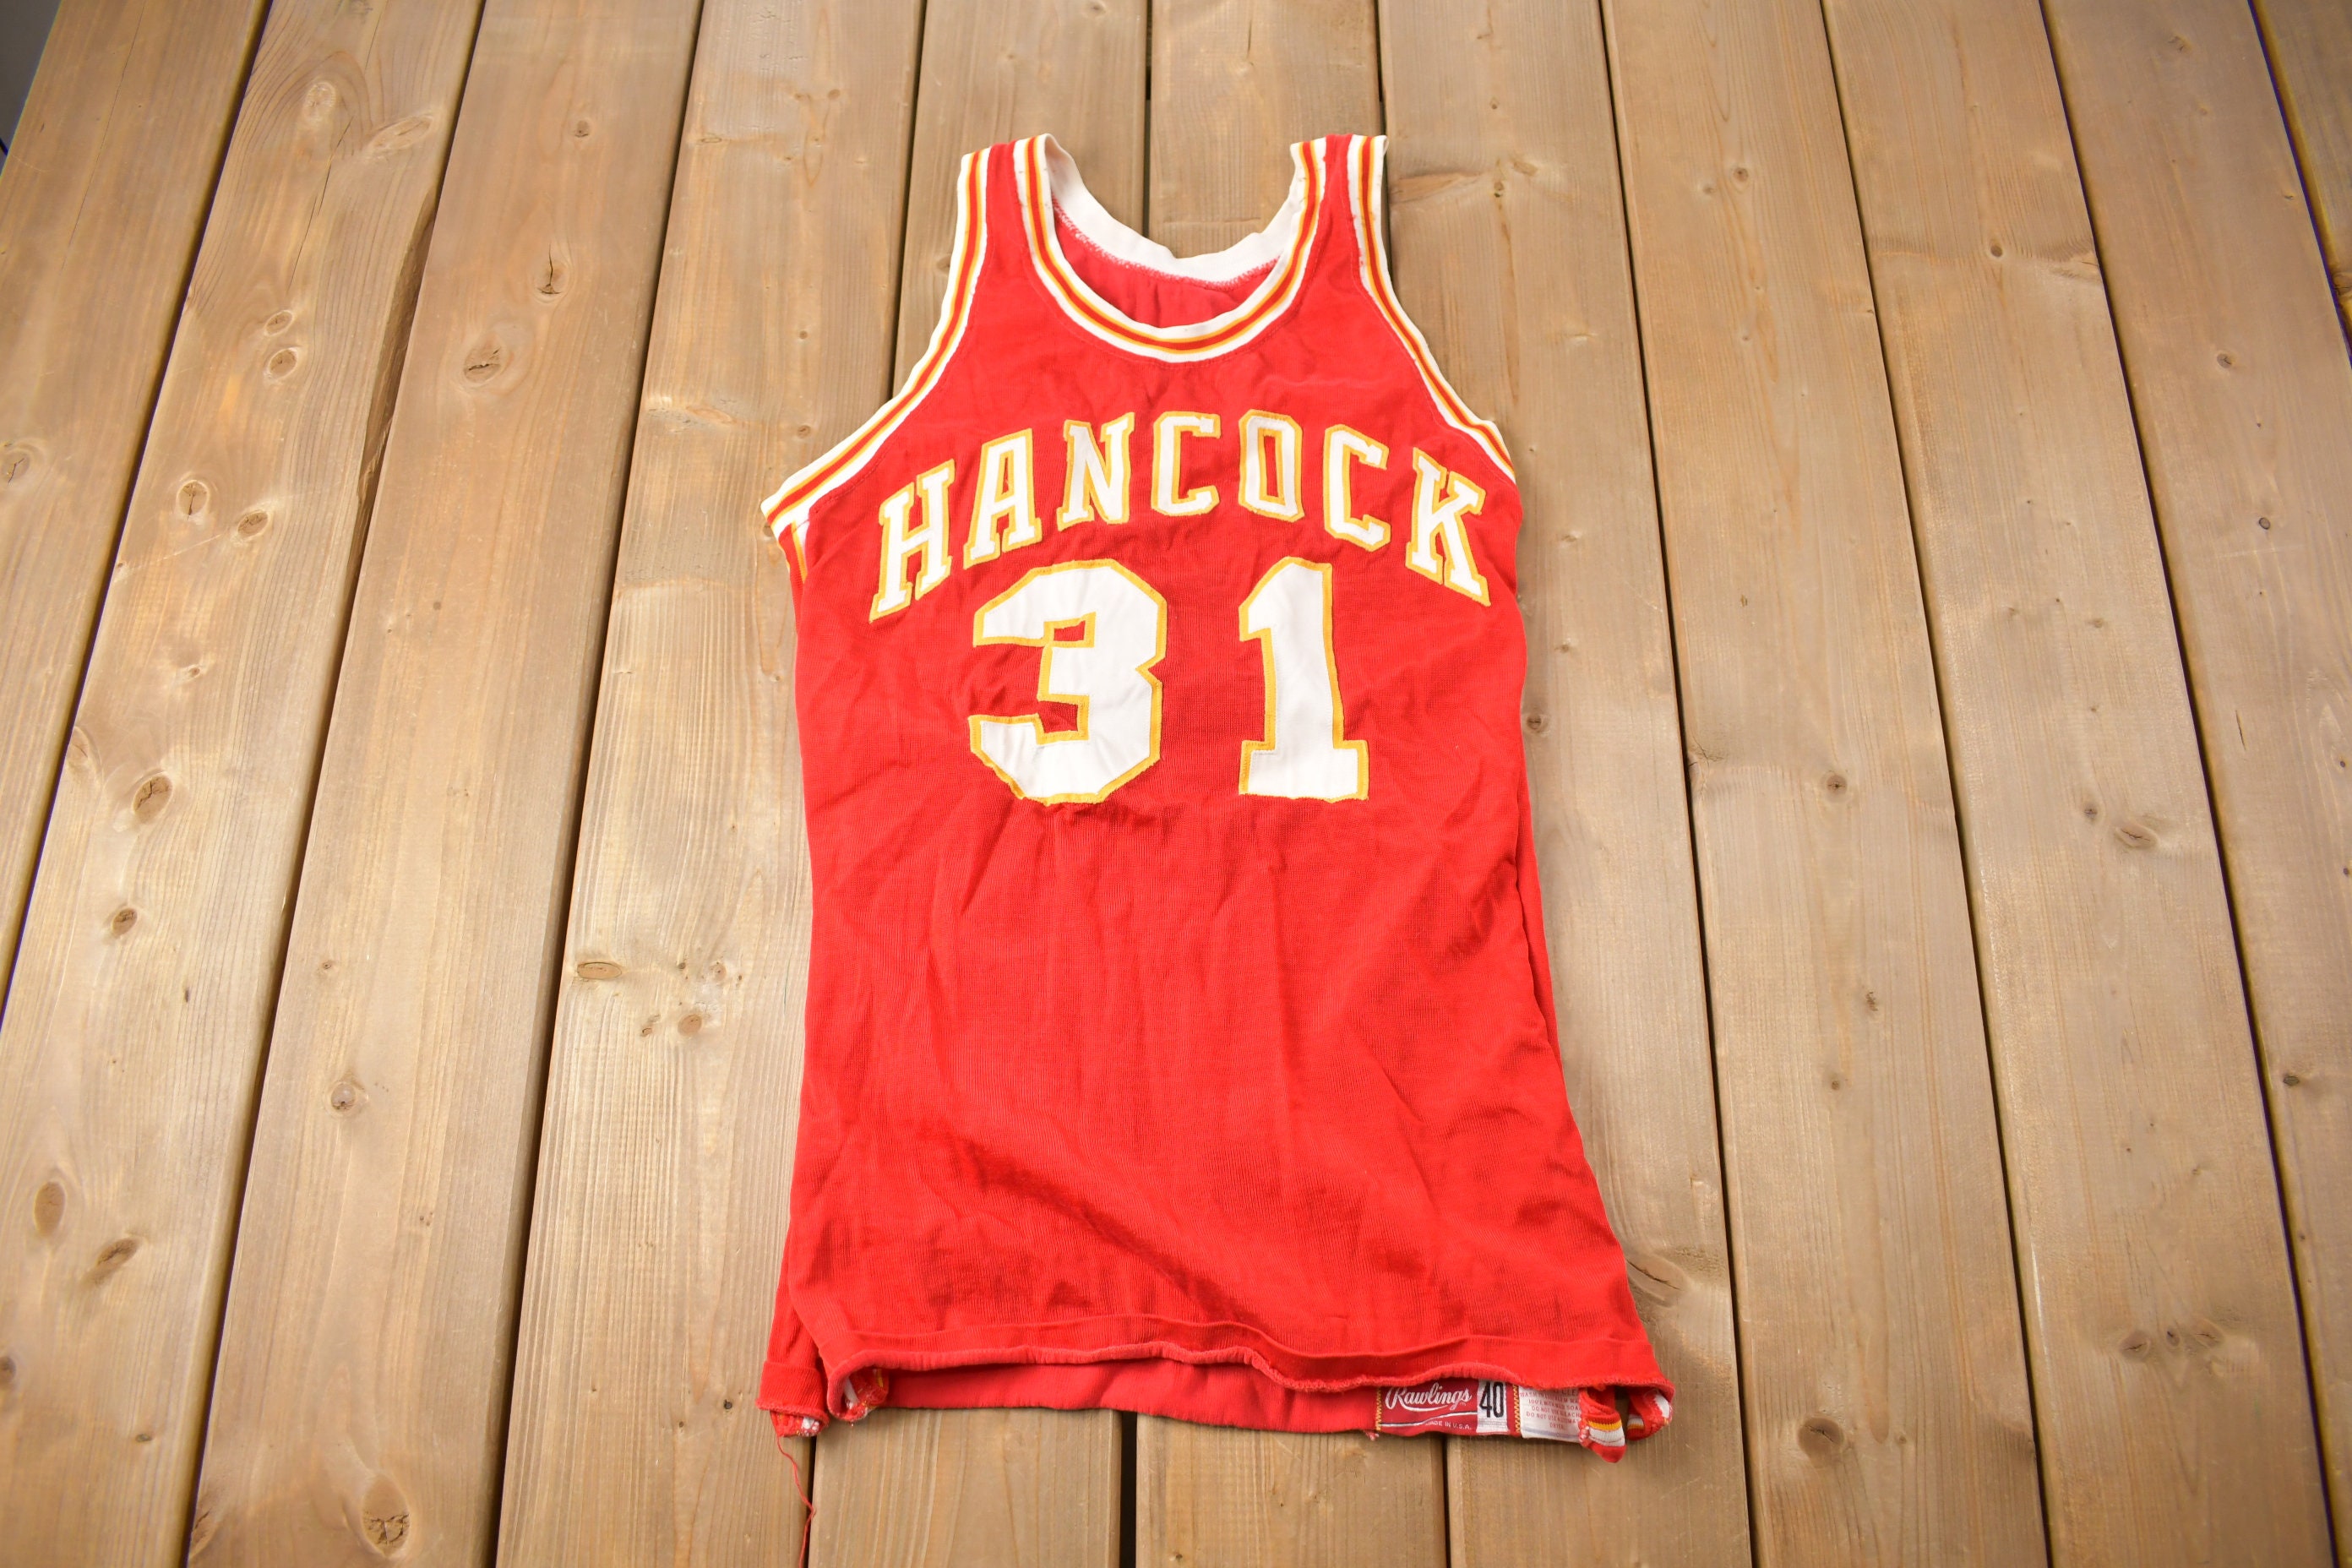 Vintage 1970s Hancock 31 Basketball Jersey / Sportswear / Made in USA /  True Vintage / Streetwear / Rawlings Jersey -  Finland